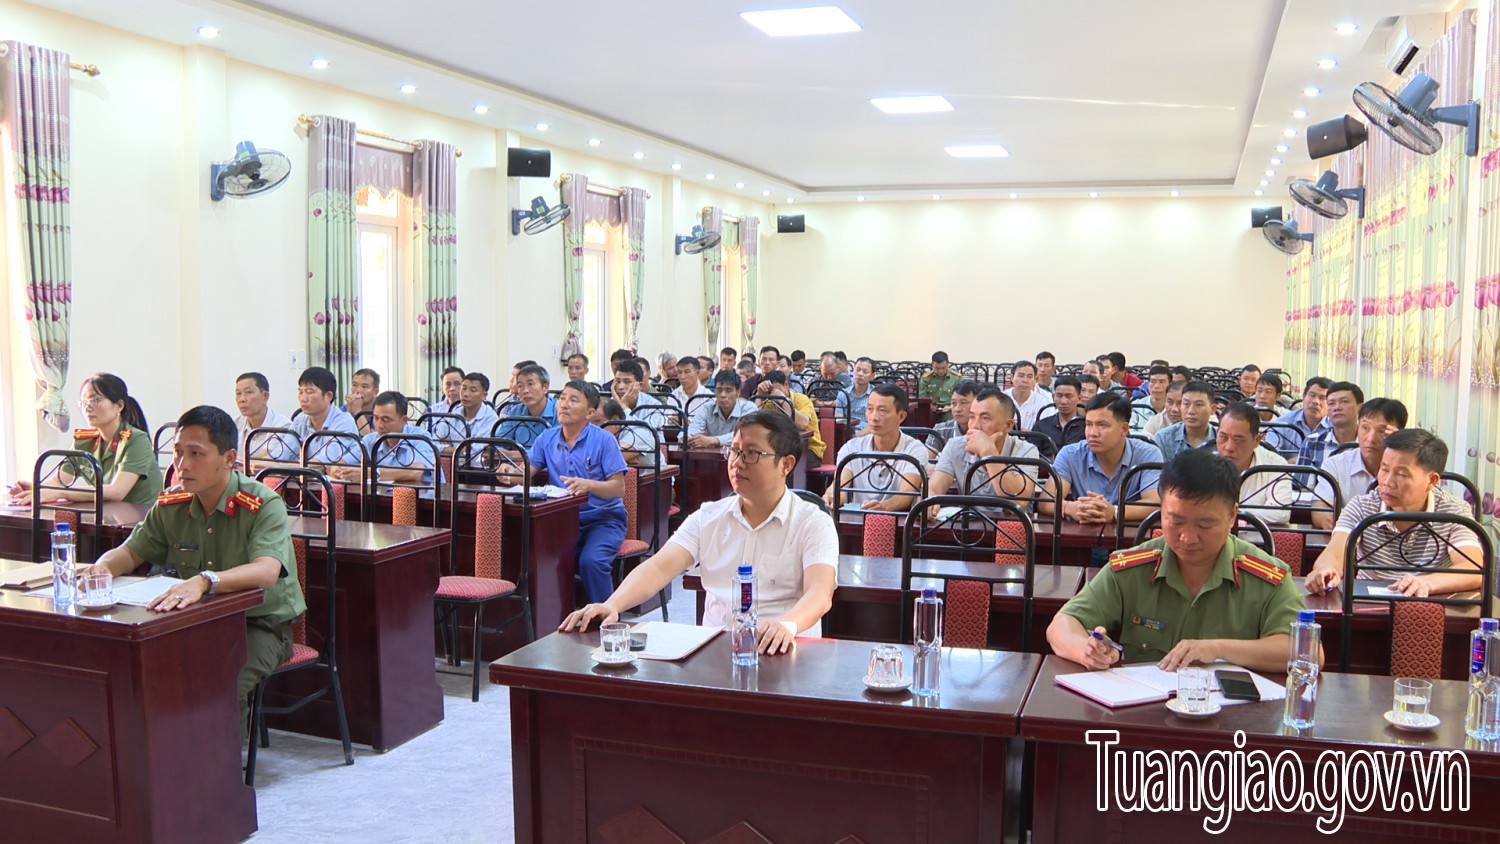 Công an tỉnh Điện Biên tổ chức tập huấn nghiệp vụ bảo vệ cho lực lượng bảo vệ cơ quan, doanh nghiệp, trường học trên địa bàn hình bầu cua tôm cá
